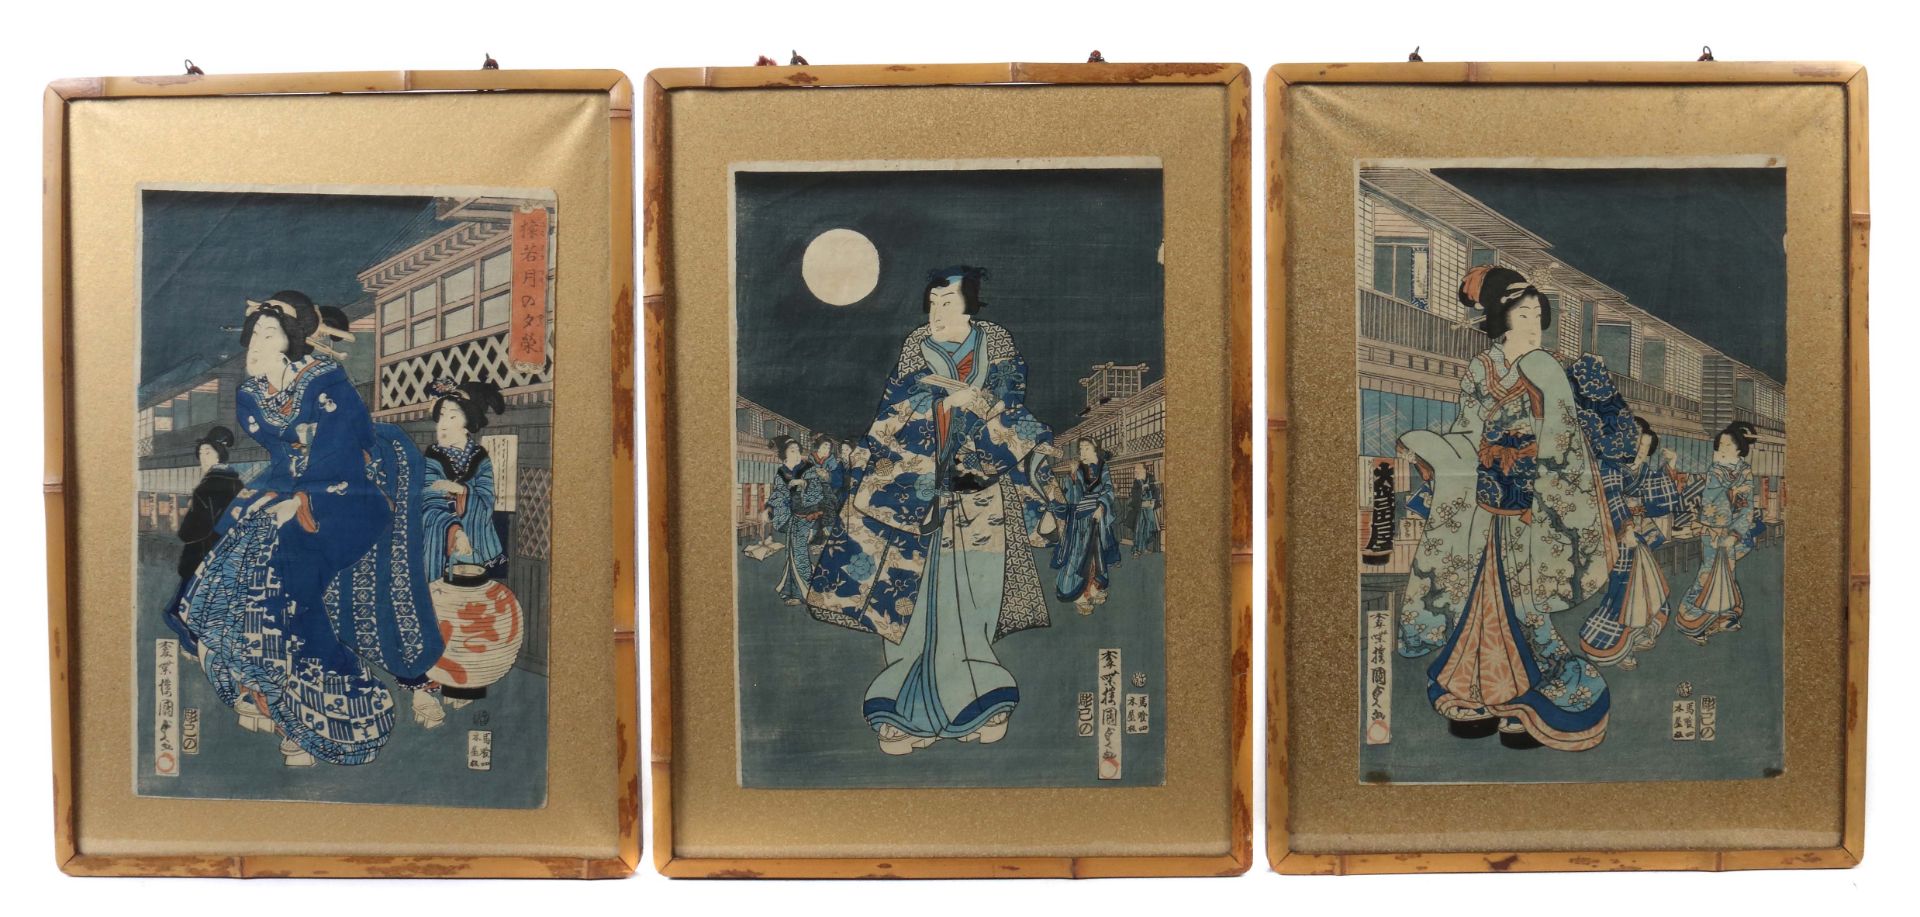 Kunisada, Utagawa 1786-1864, Zeichner